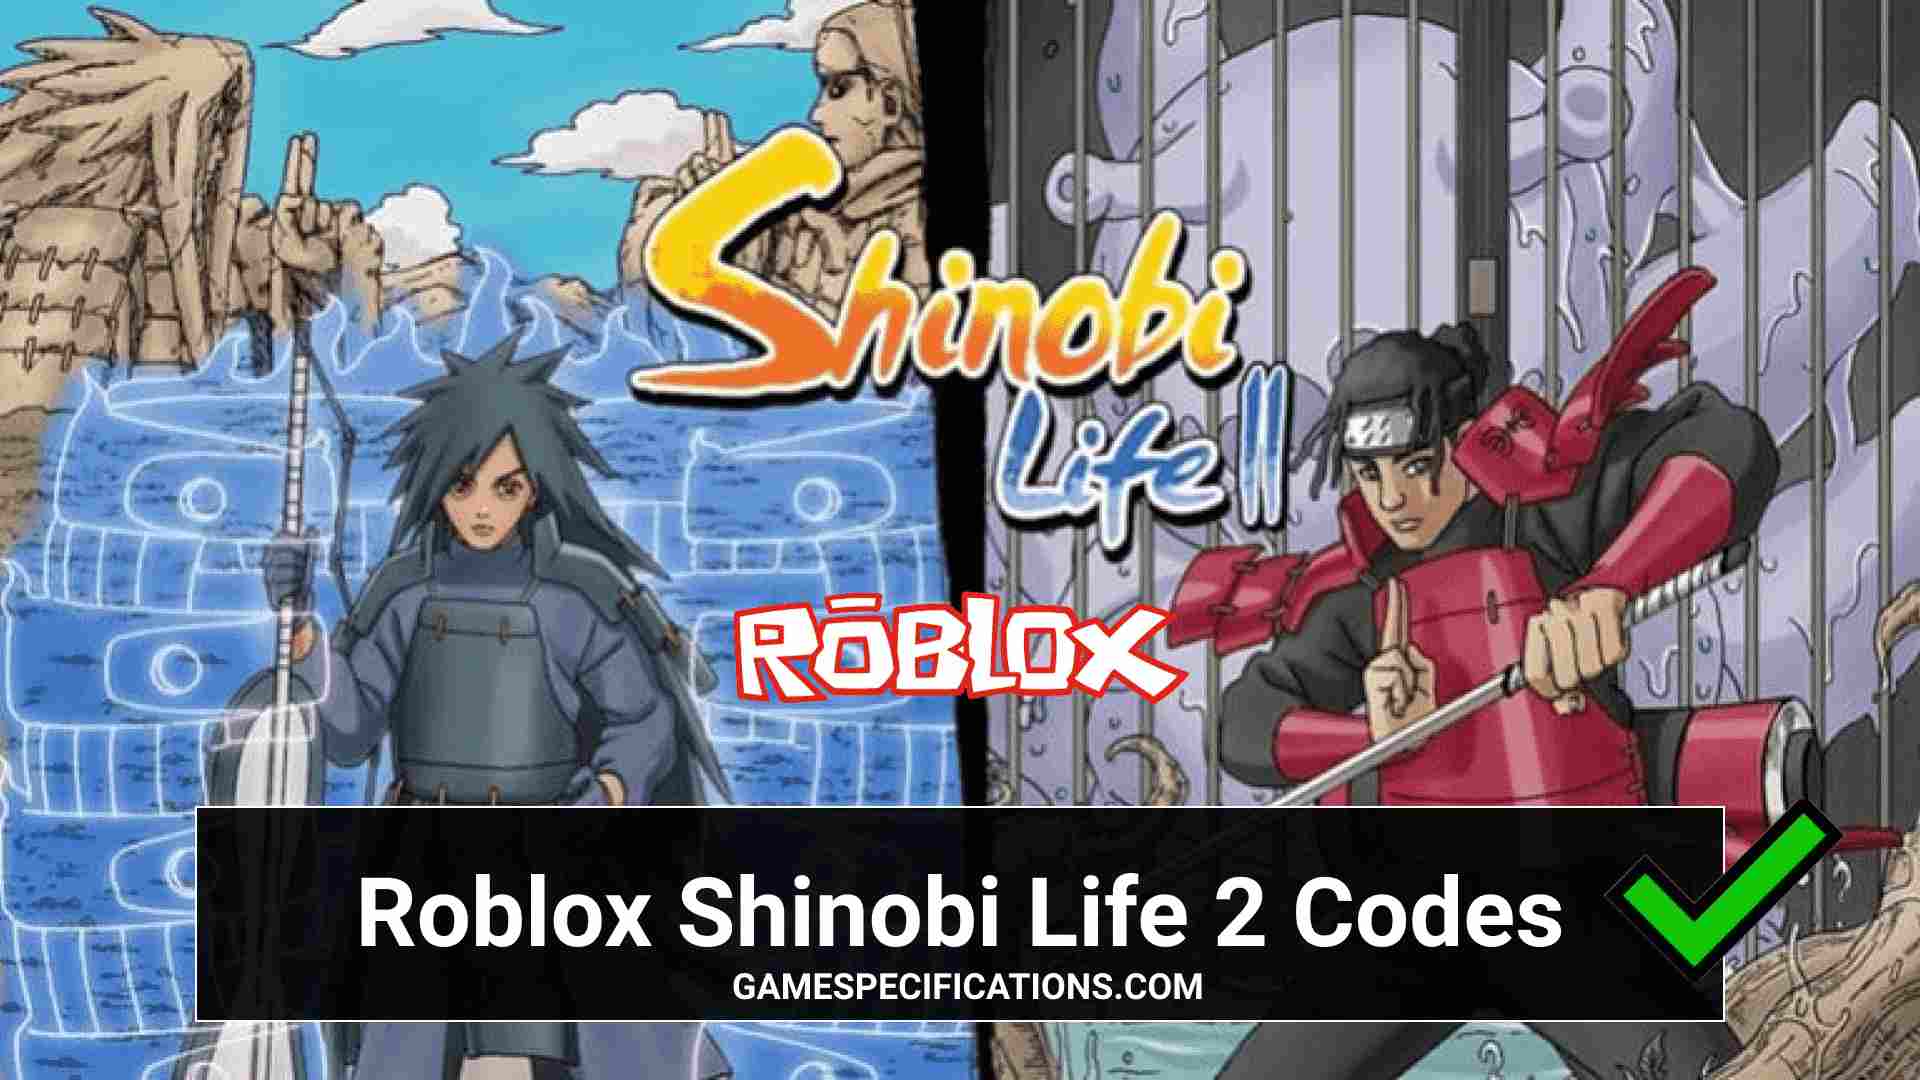 Shinobi life servers